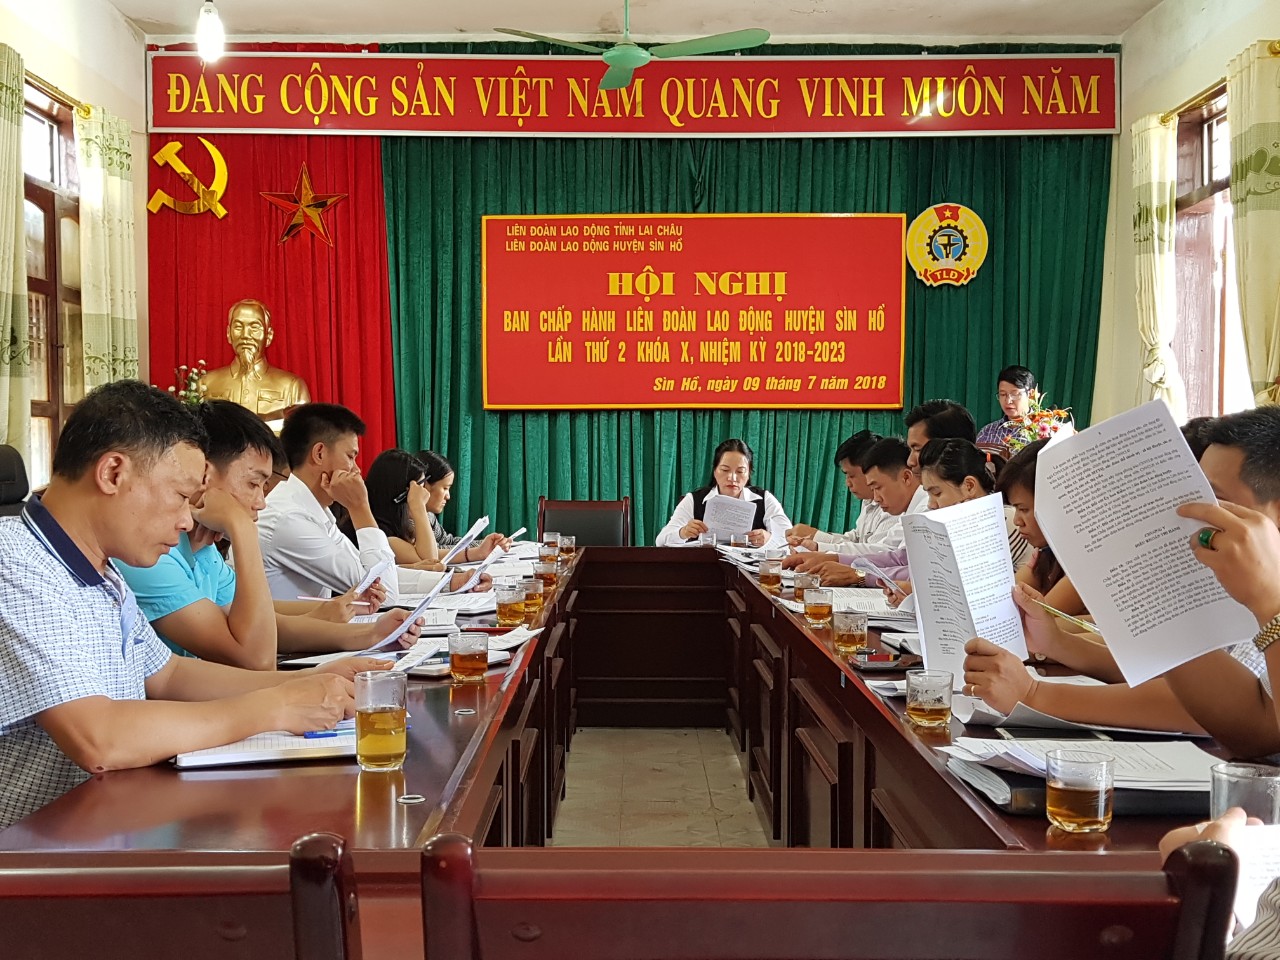 Toàn cảnh hội nghị BCH Liên đoàn Lao động huyện Sìn hồ  lần thứ 2 khóa X, nhiệm kỳ 2018-2023